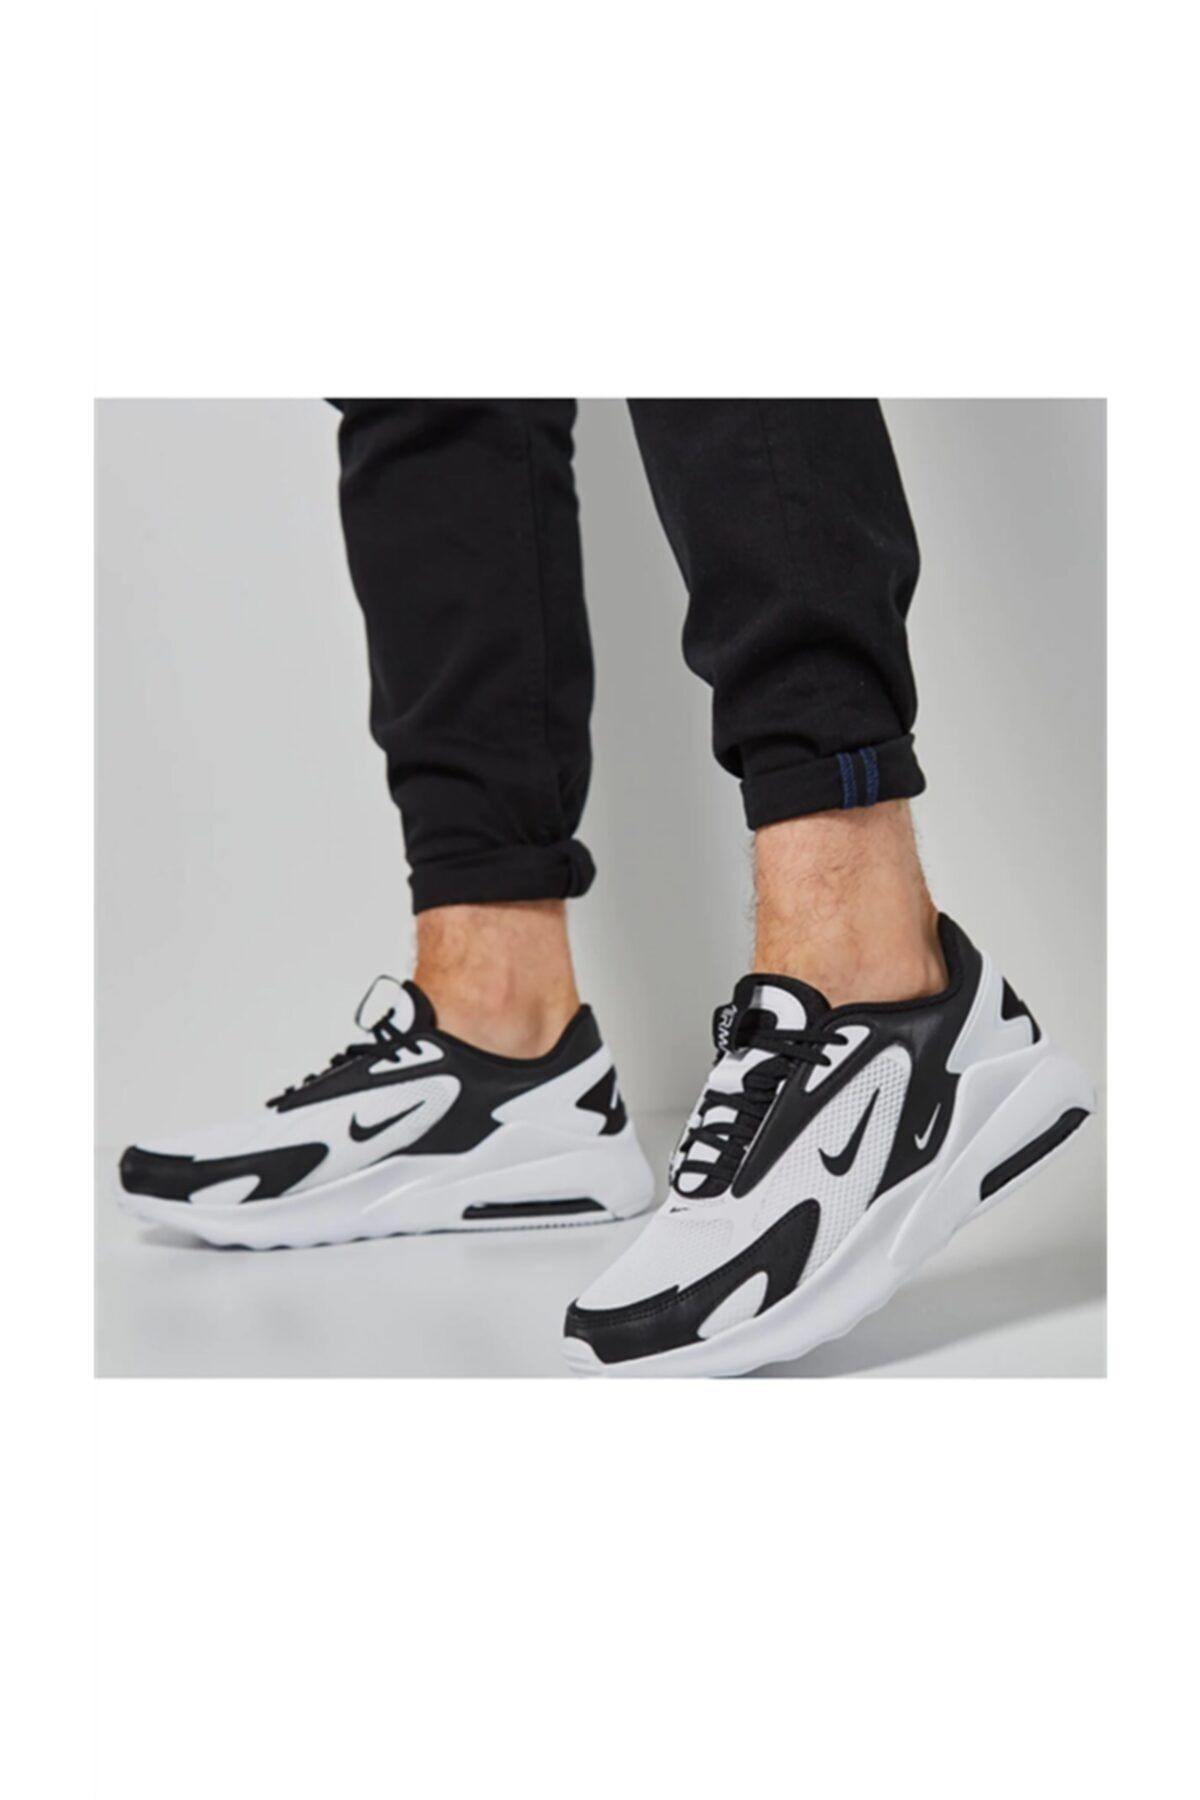 Nike Air Max Bolt Erkek Günlük Sneaker Spor Ayakkabı Beyaz Cu4151-102 V2